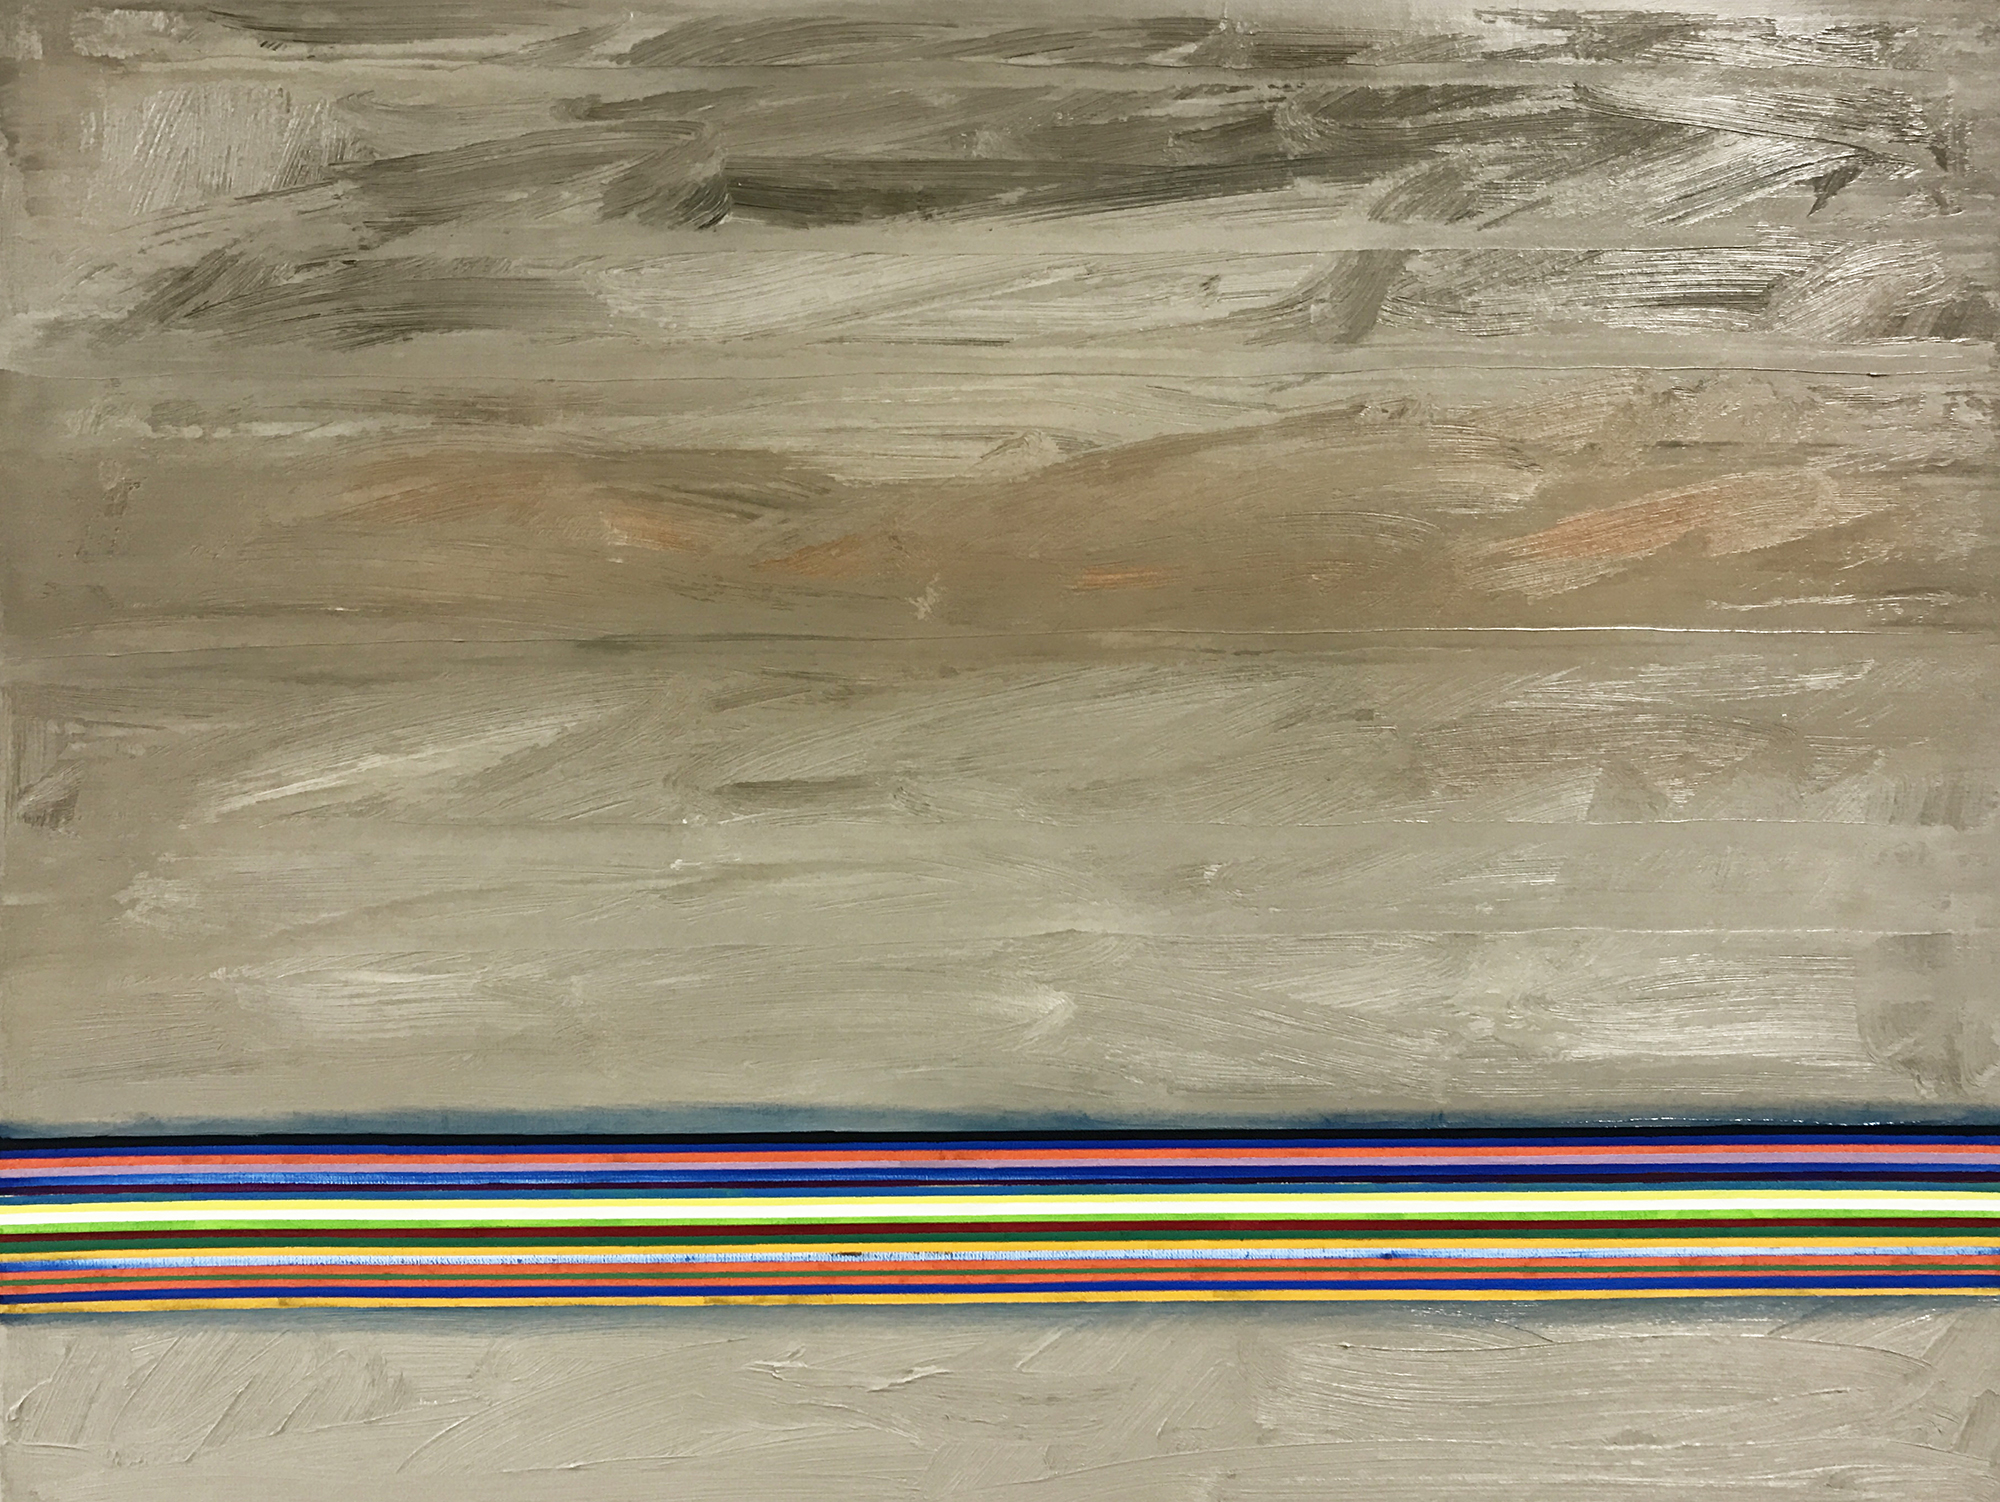 Greyland 2 -oil on canvas 50 x 65 cm- 2017 Miquel Gelabert